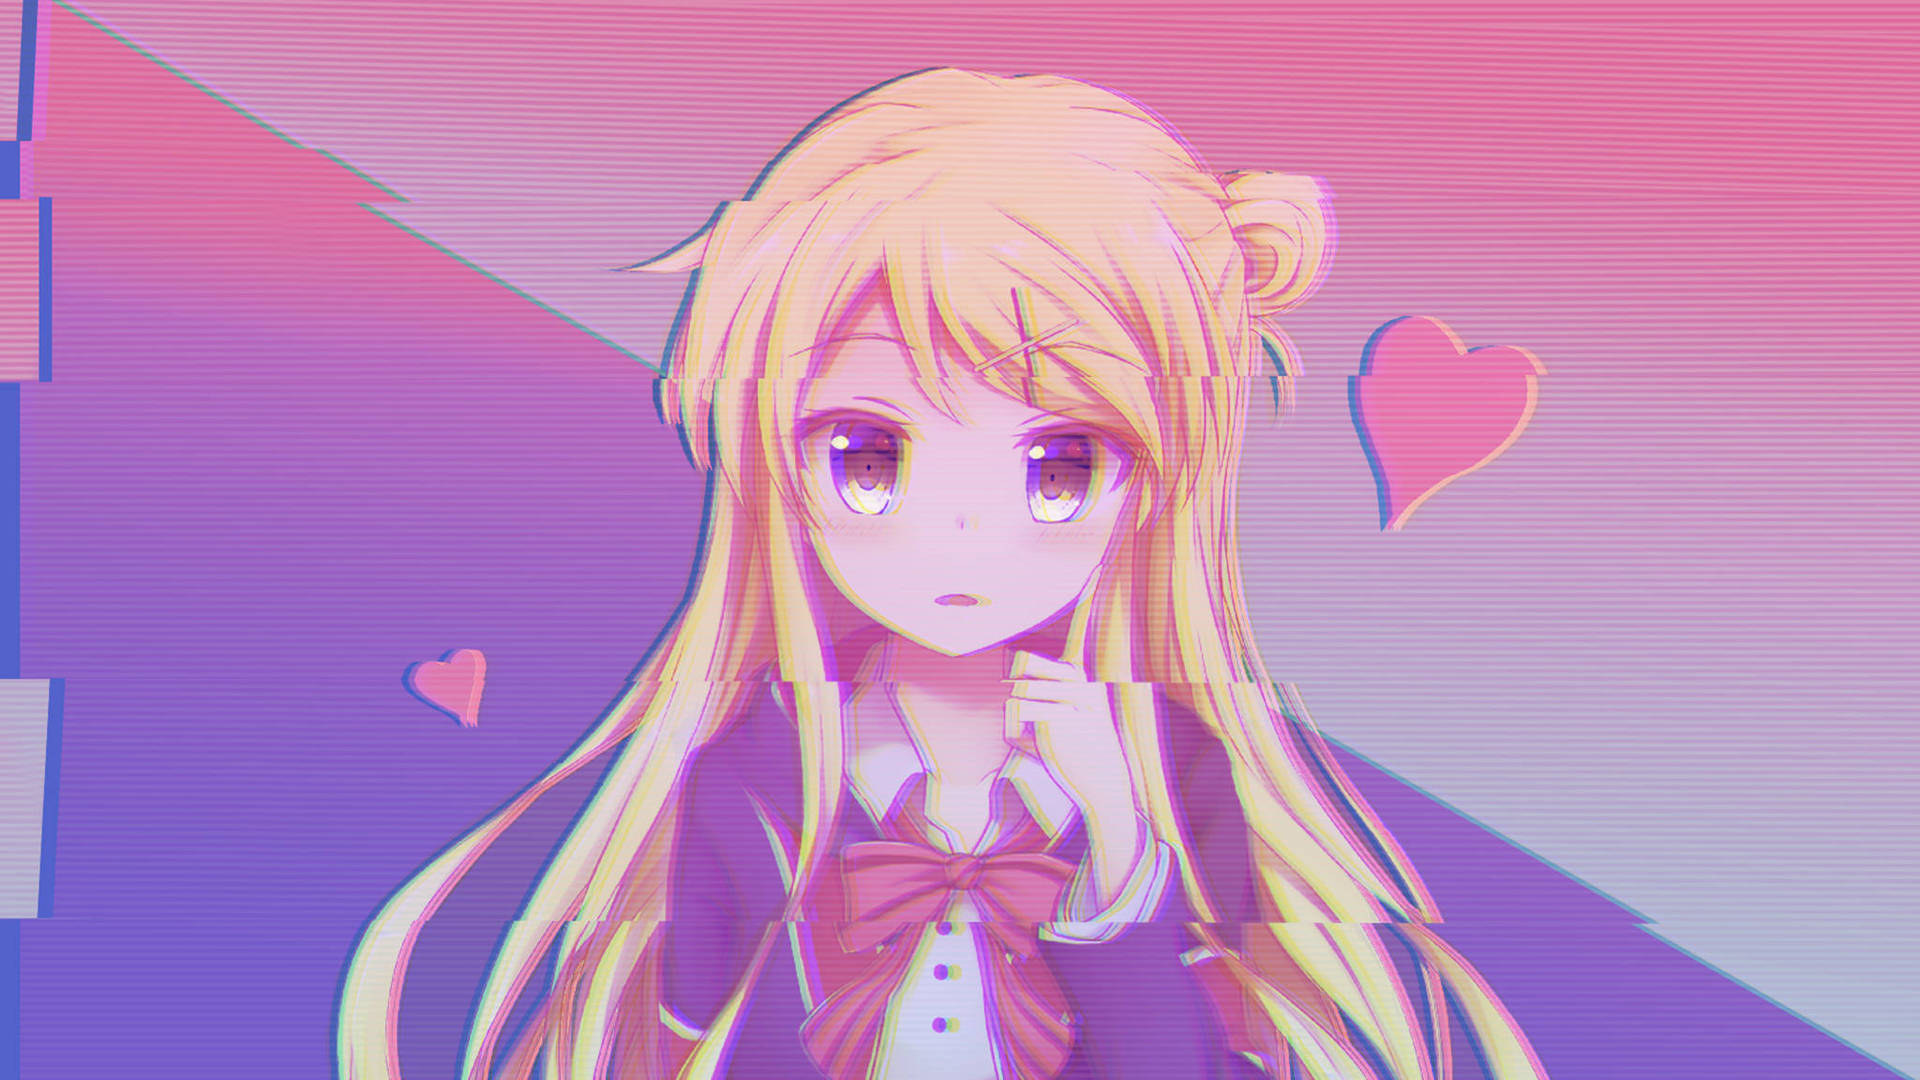 Girly Pink Aesthetic Anime Schoolgirl Background